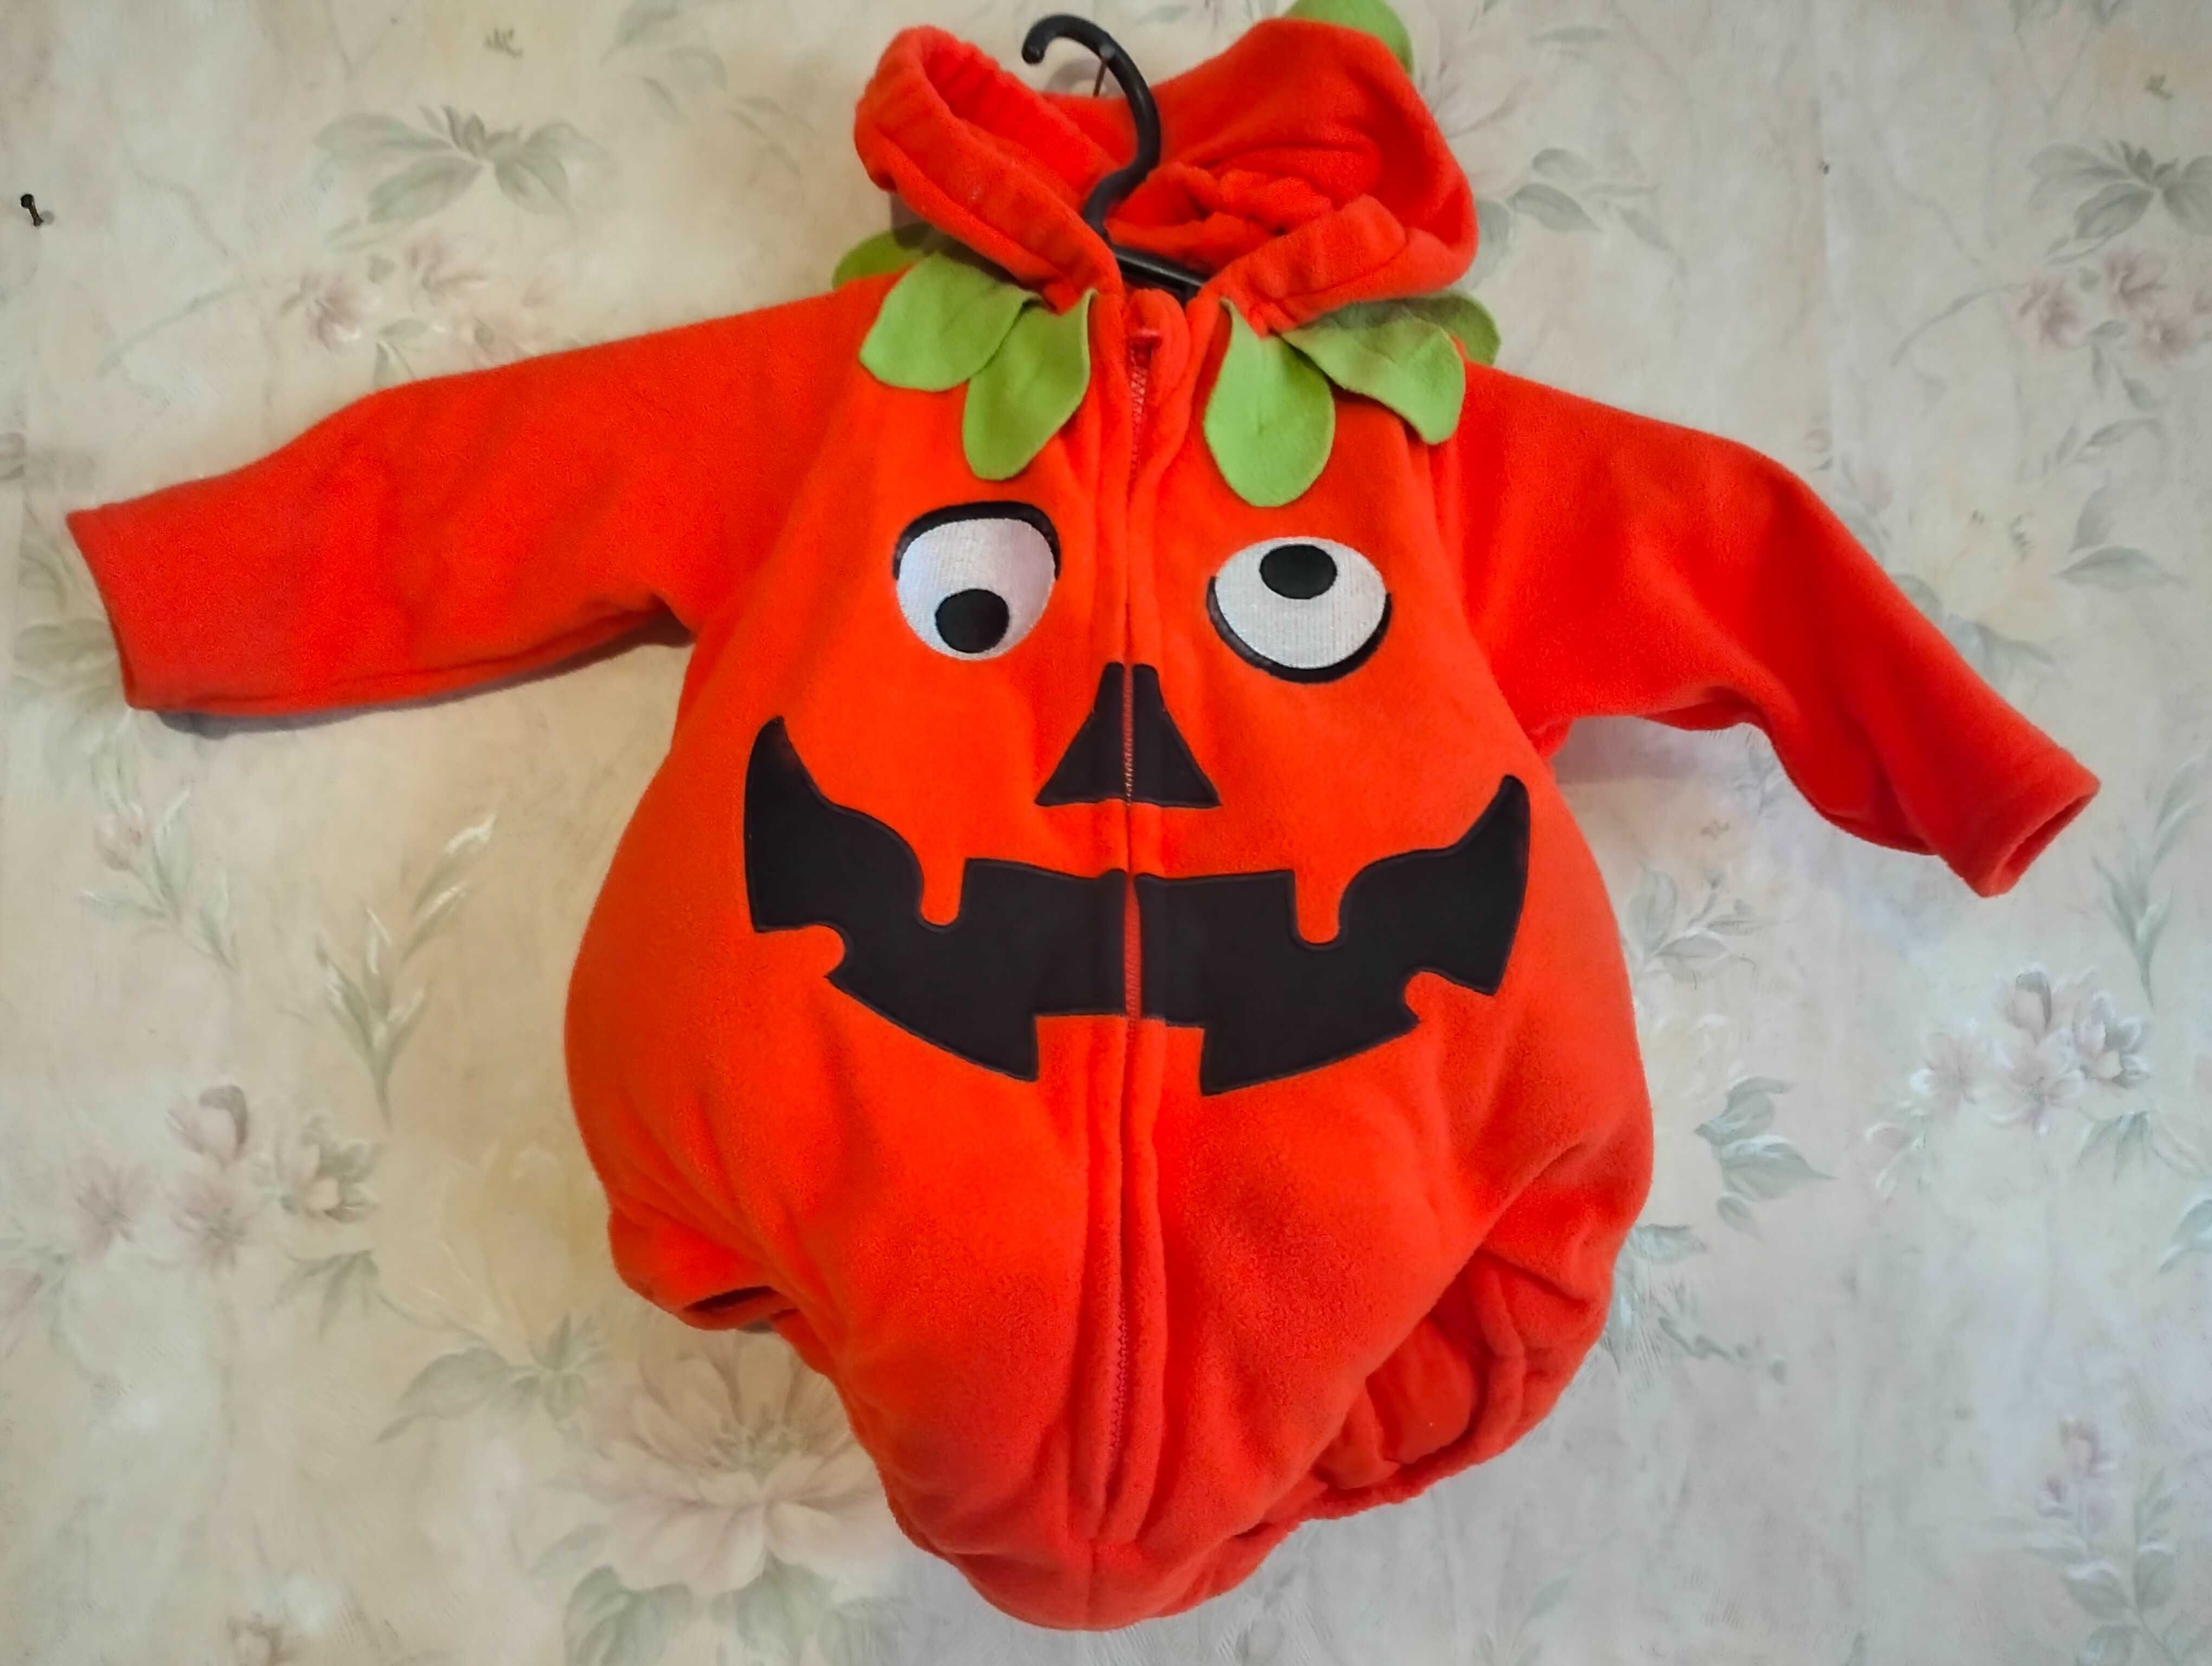 Детский костюм тыквы с рукавами на Хеллоуин Halloween.